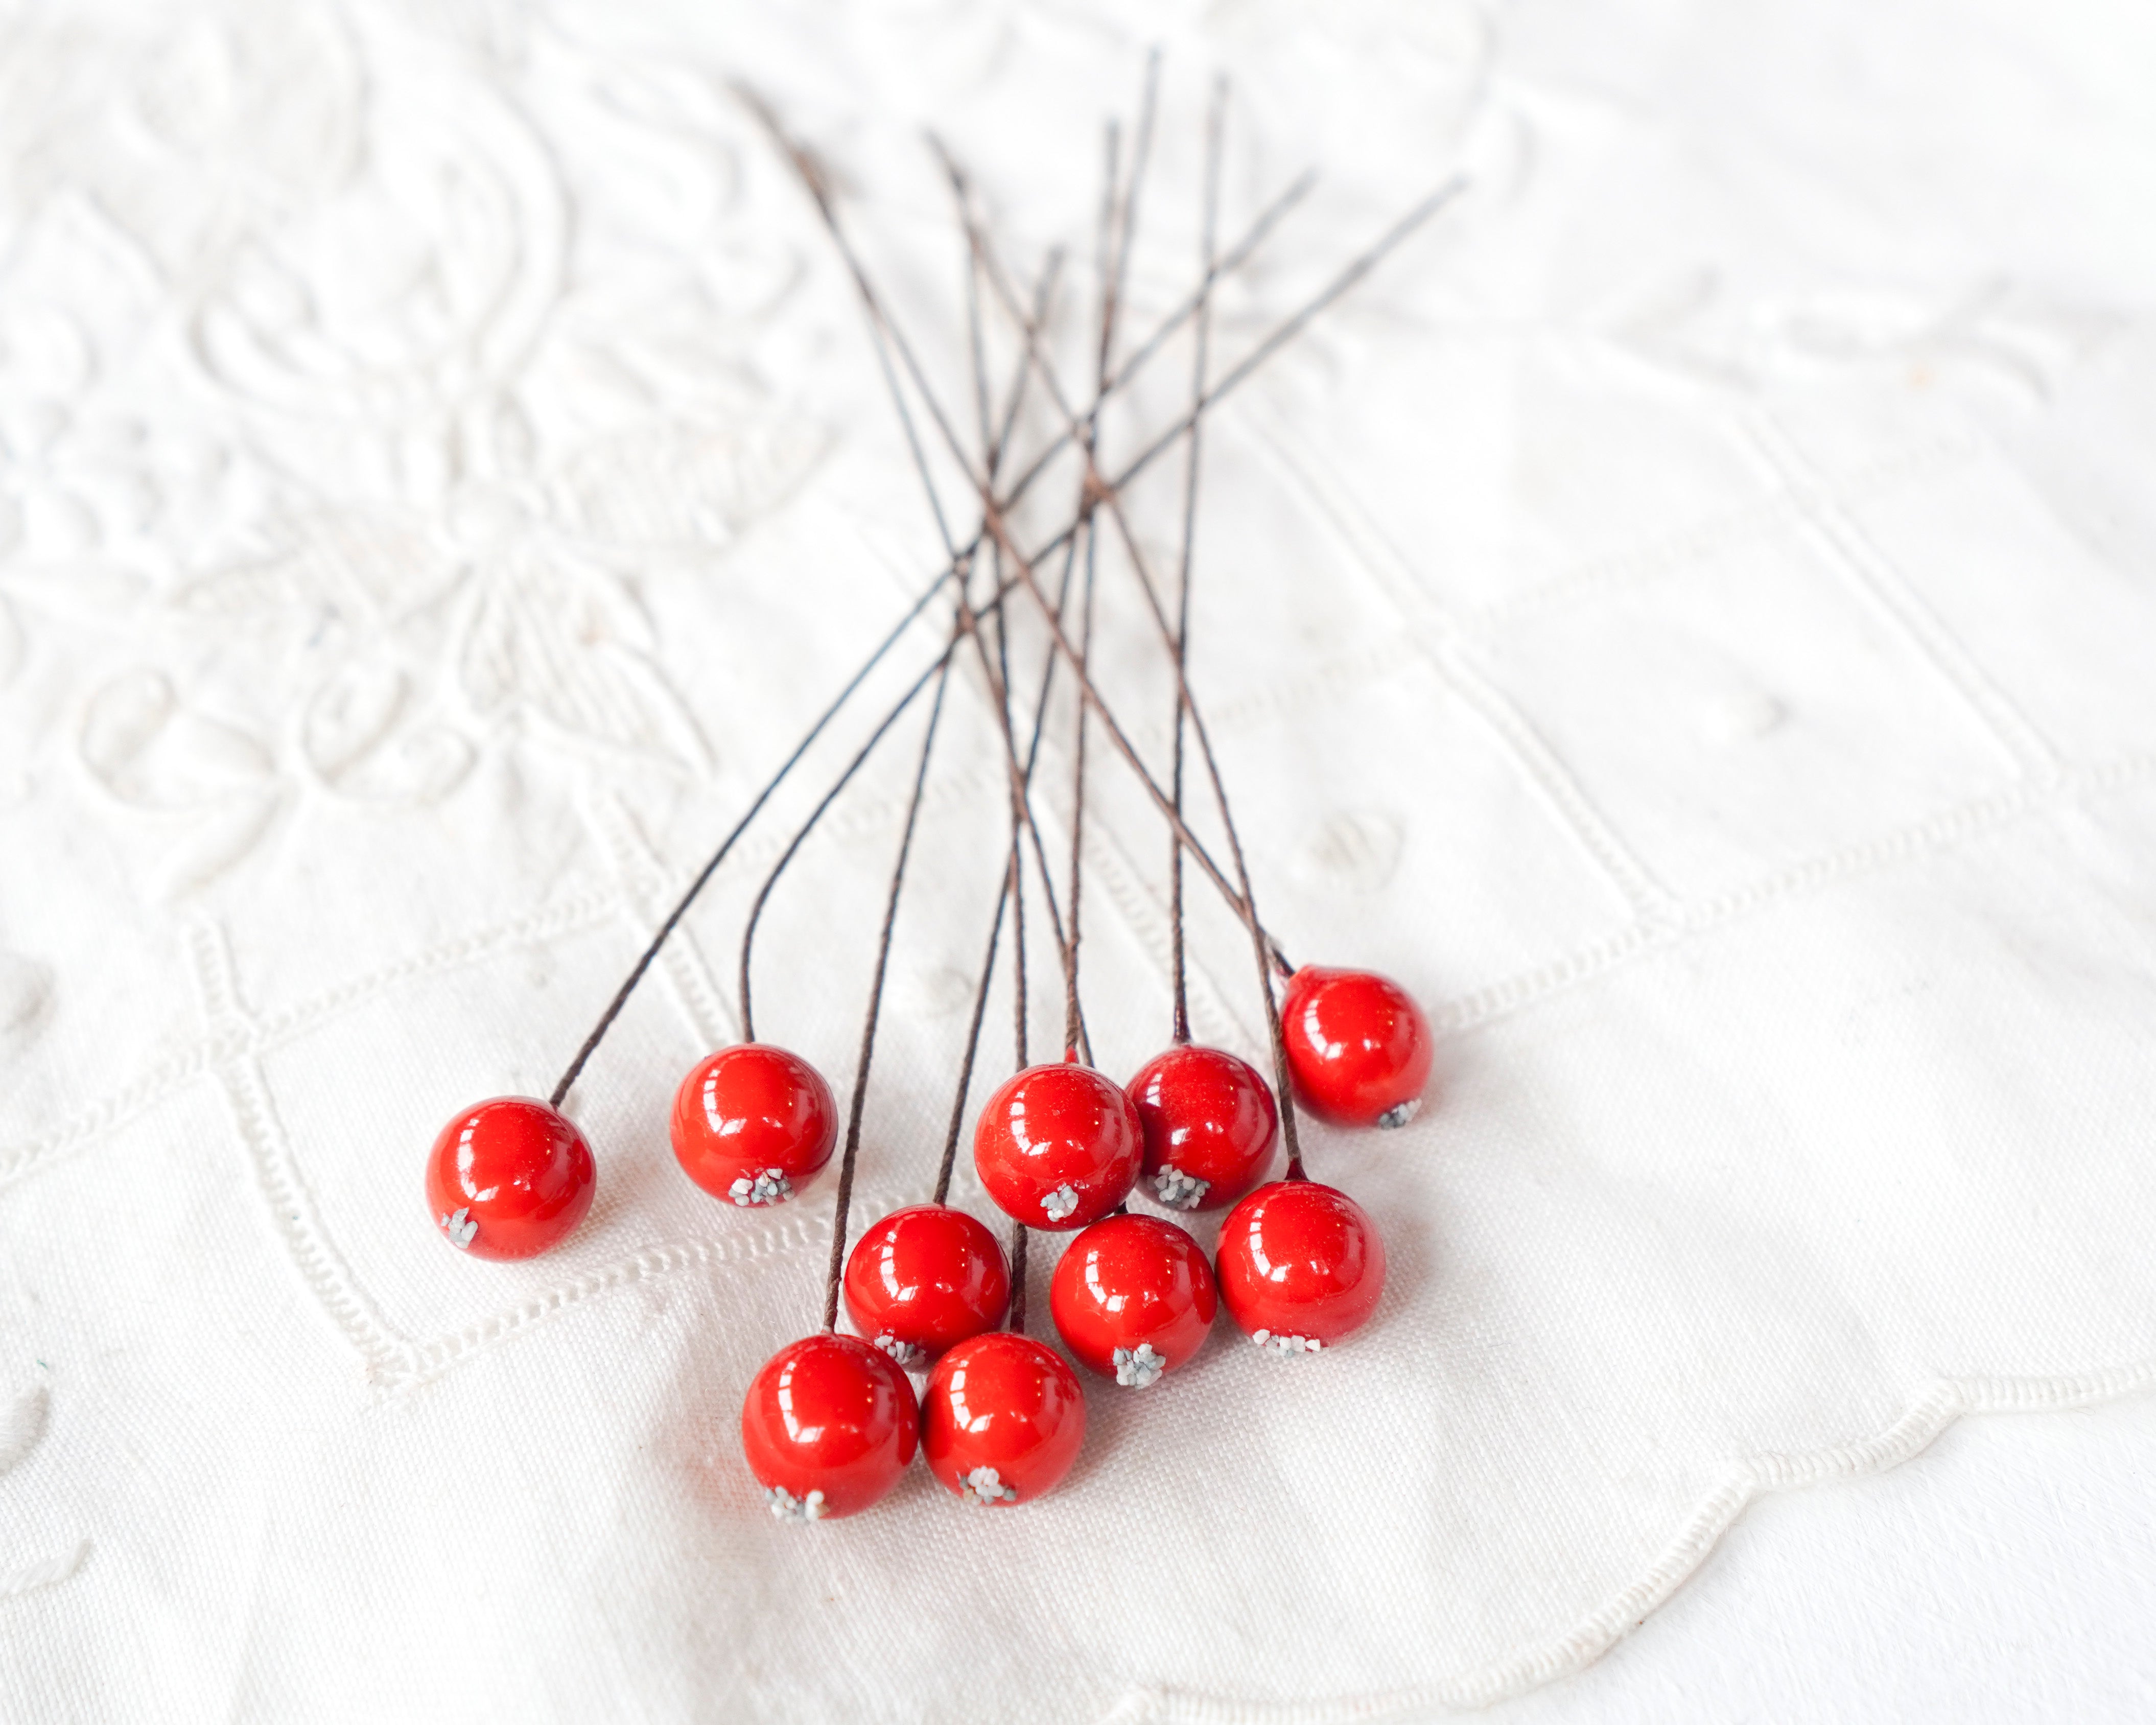 Red Berries - Mini Spun Cotton Berry Picks, 10 Pcs.